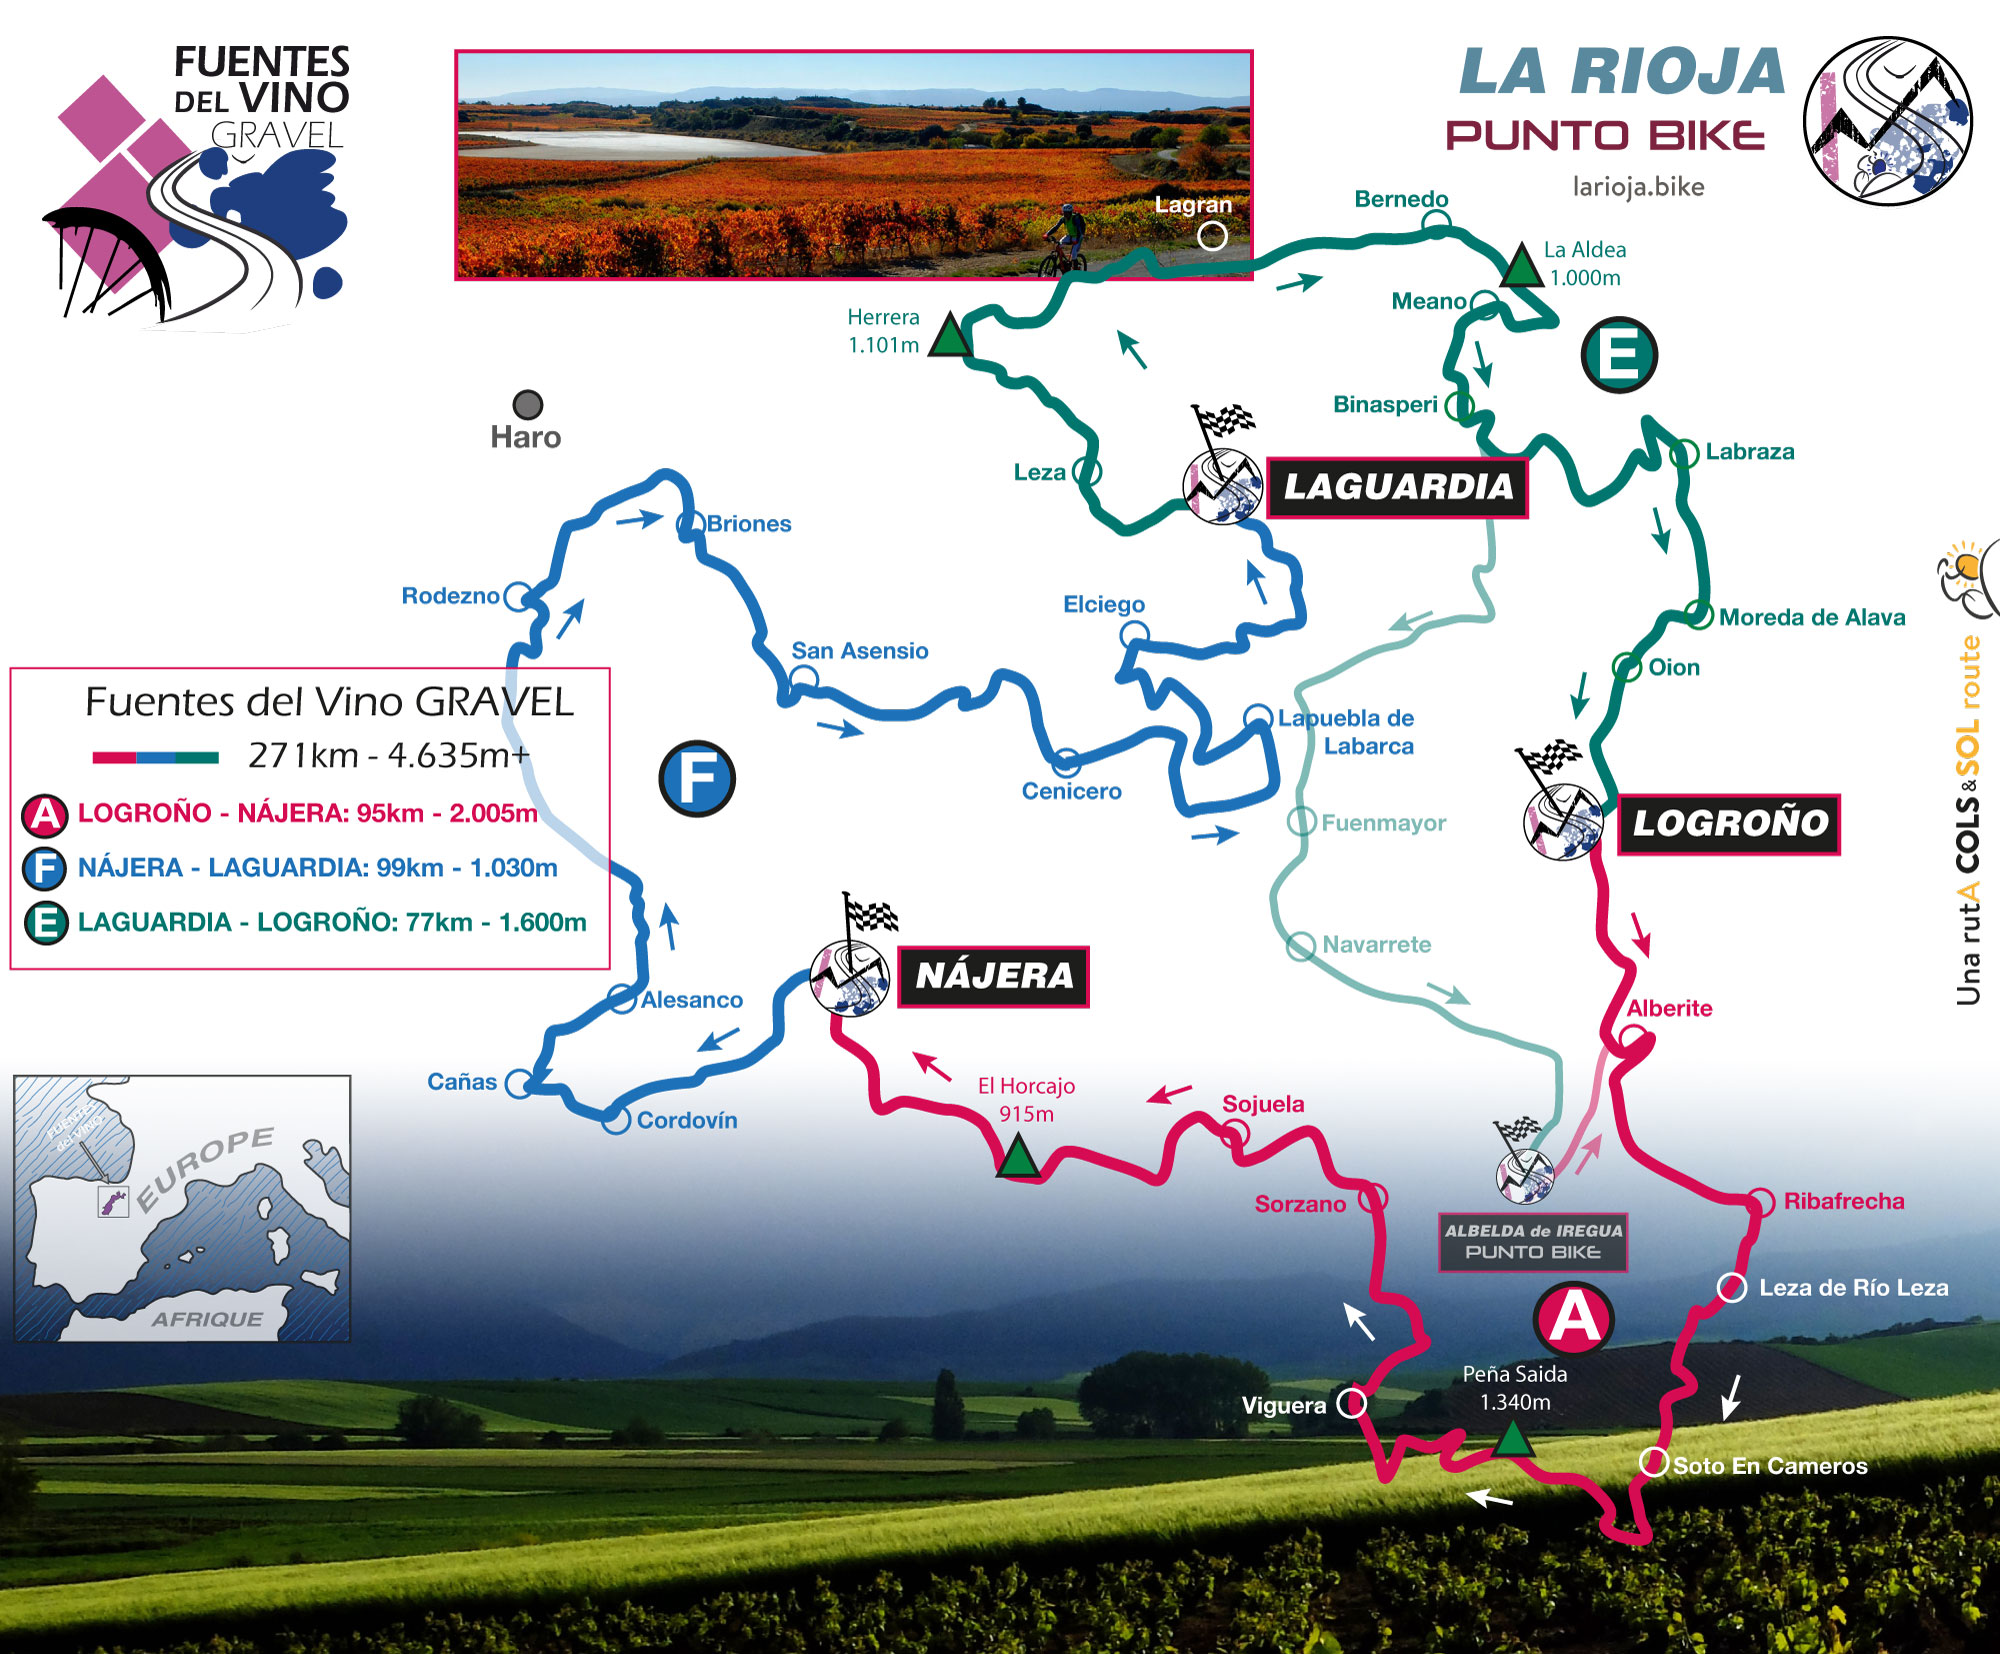 Mapa Fuentes-del-Vino-GRAVEL-3-etapas